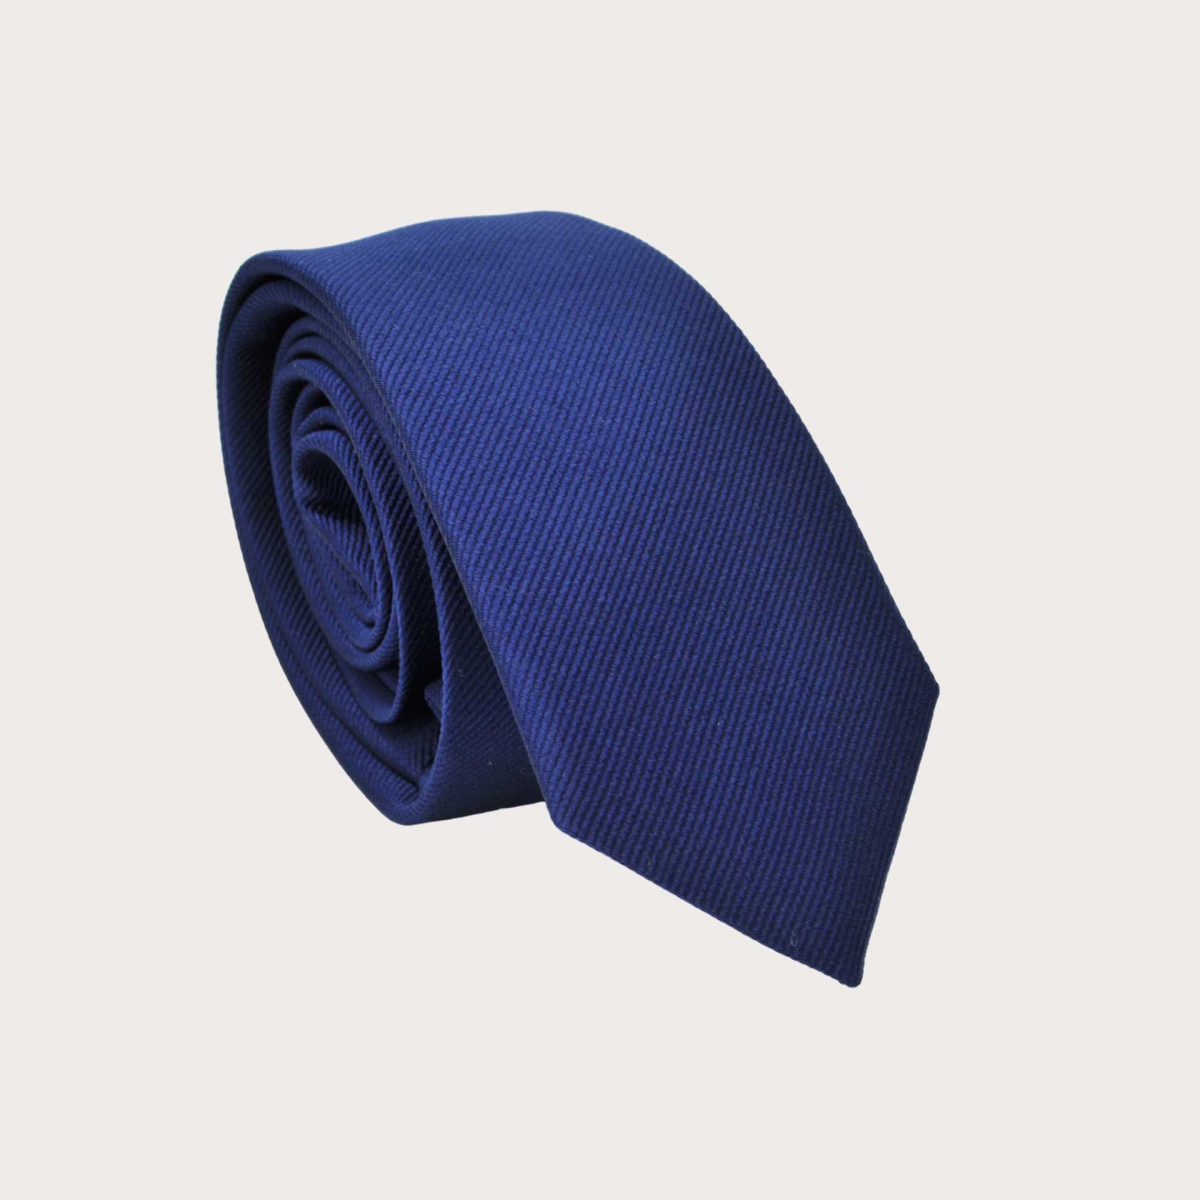 Corbata estrecha de seda azul